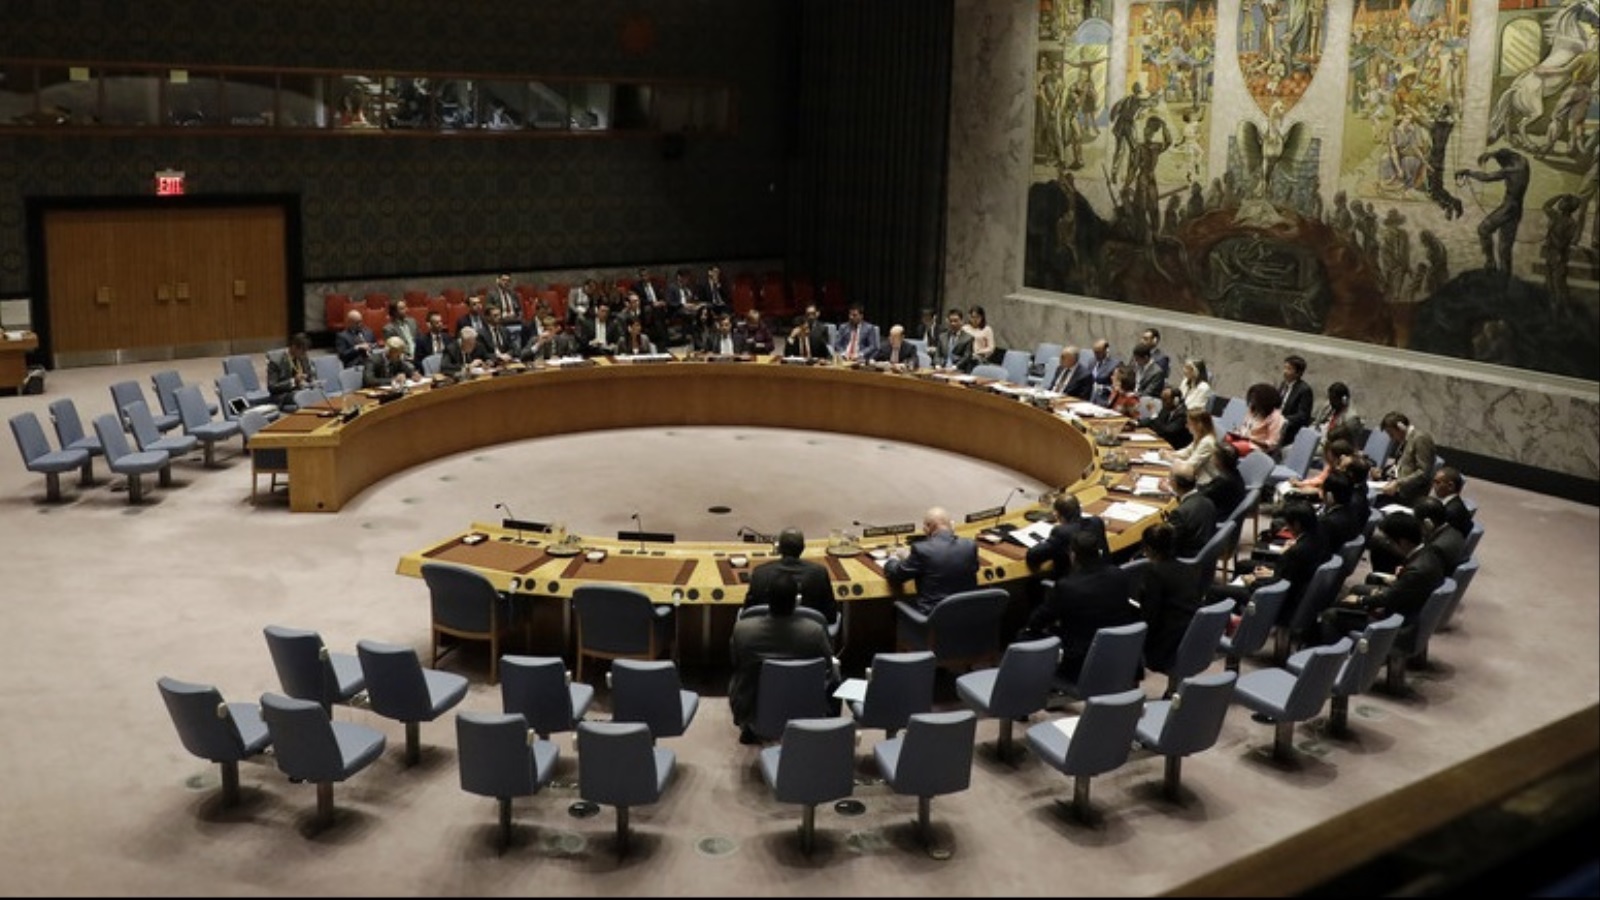 ‪جلسة عقدها مجلس الأمن أواخر الشهر الماضي بشأن كوريا الشمالية‬ جلسة عقدها مجلس الأمن أواخر الشهر الماضي بشأن كوريا الشمالية (الأوروبية)